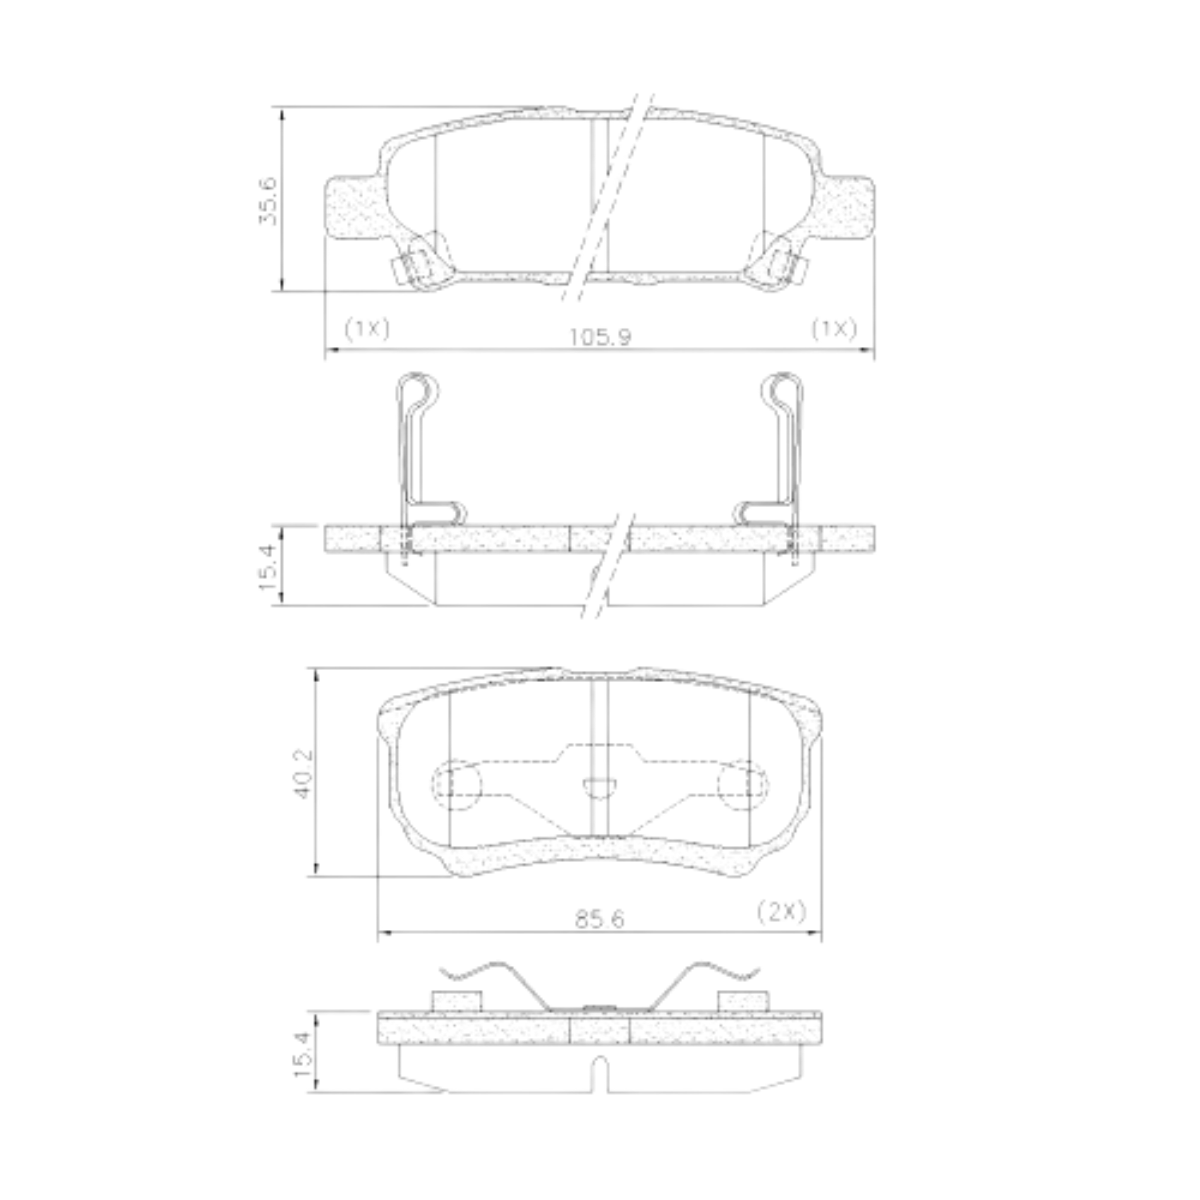 Pastilha Freio Mitsubishi Lancer 2.0 16v Gt Awd 2013 Ate 2015 Traseira Sistema Akebono Fras-le Pd/723